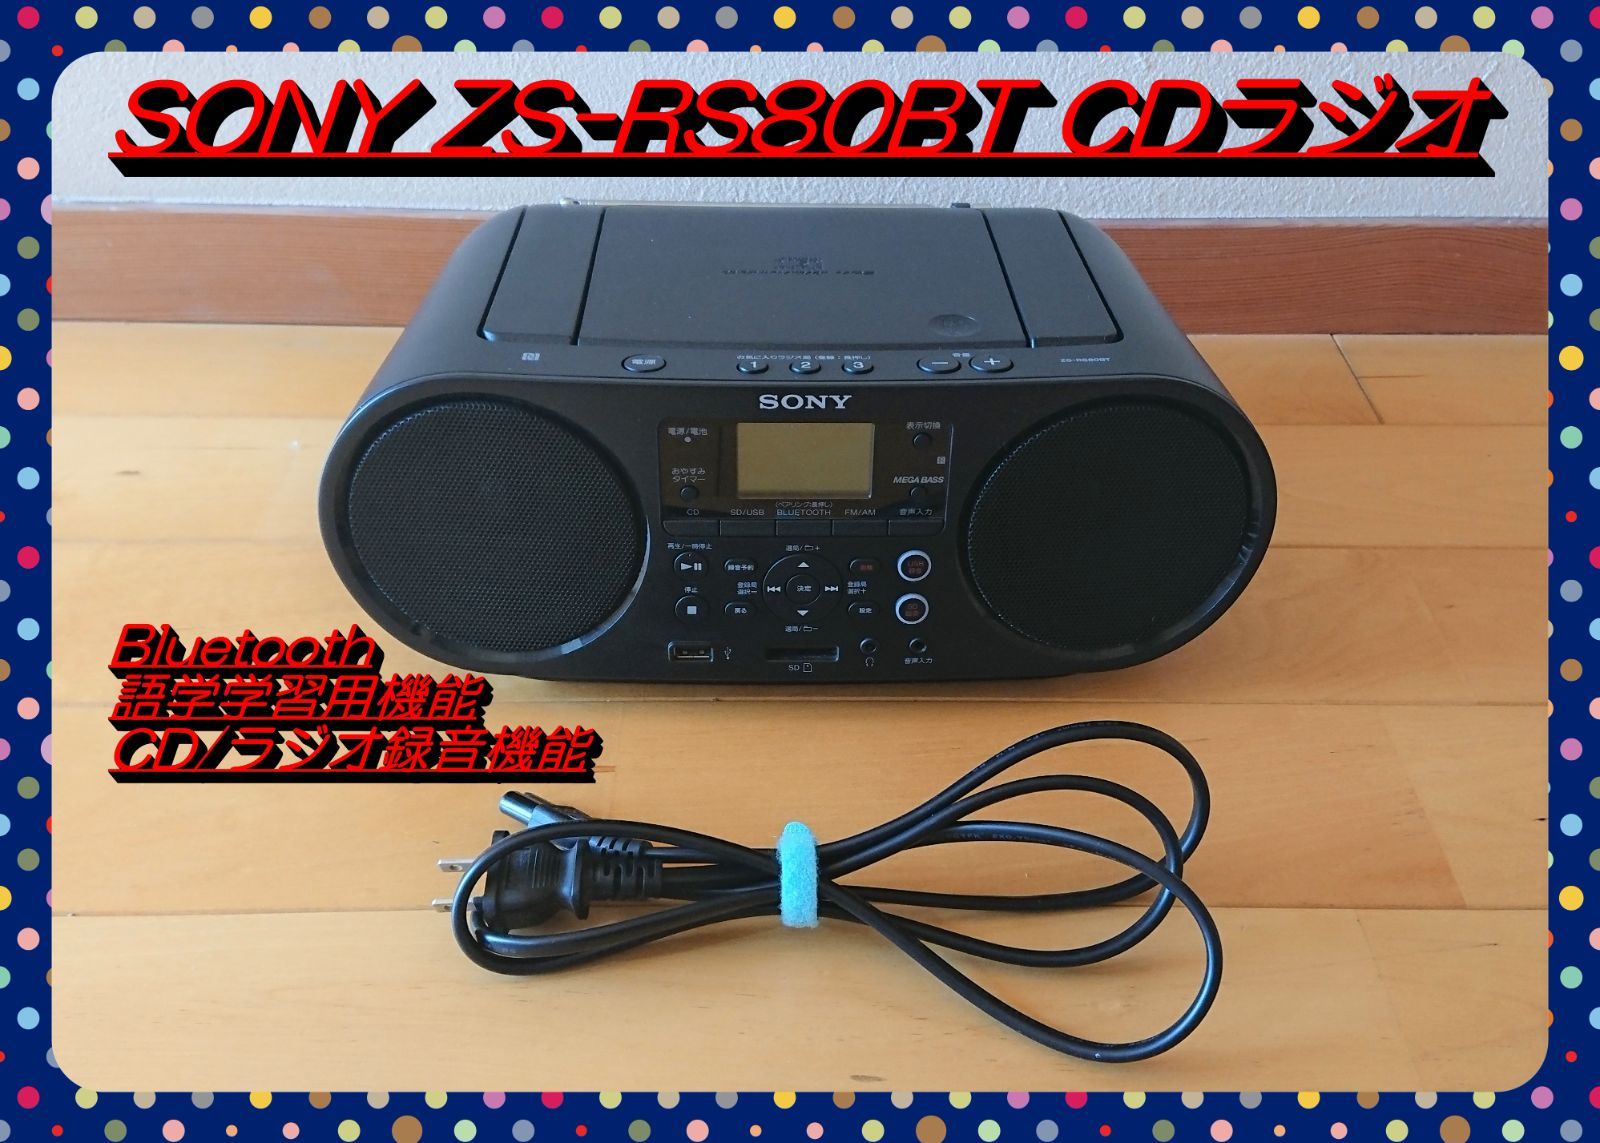 ソニー CDラジオ FM AM ワイドFM Bluetooth対応 語学学習用機能 オートスタンバイ機能搭載 ZS-RS80BT - 3